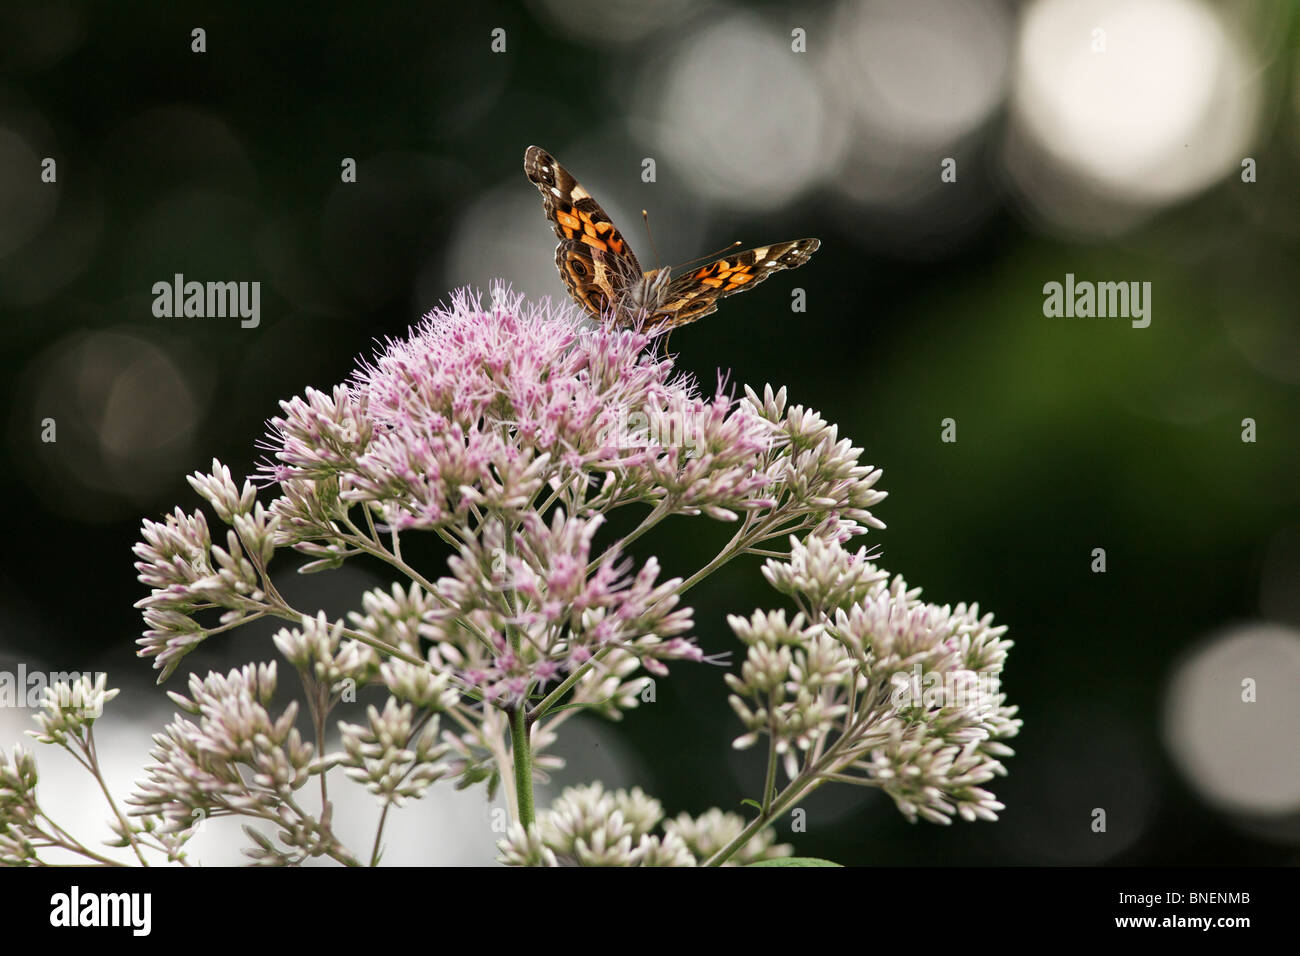 Amerikanischer Distelfalter Schmetterling (Vanessa Virginiensis) auf Joe Pye Weed (Eutrochium spp.) Blumen. Stockfoto